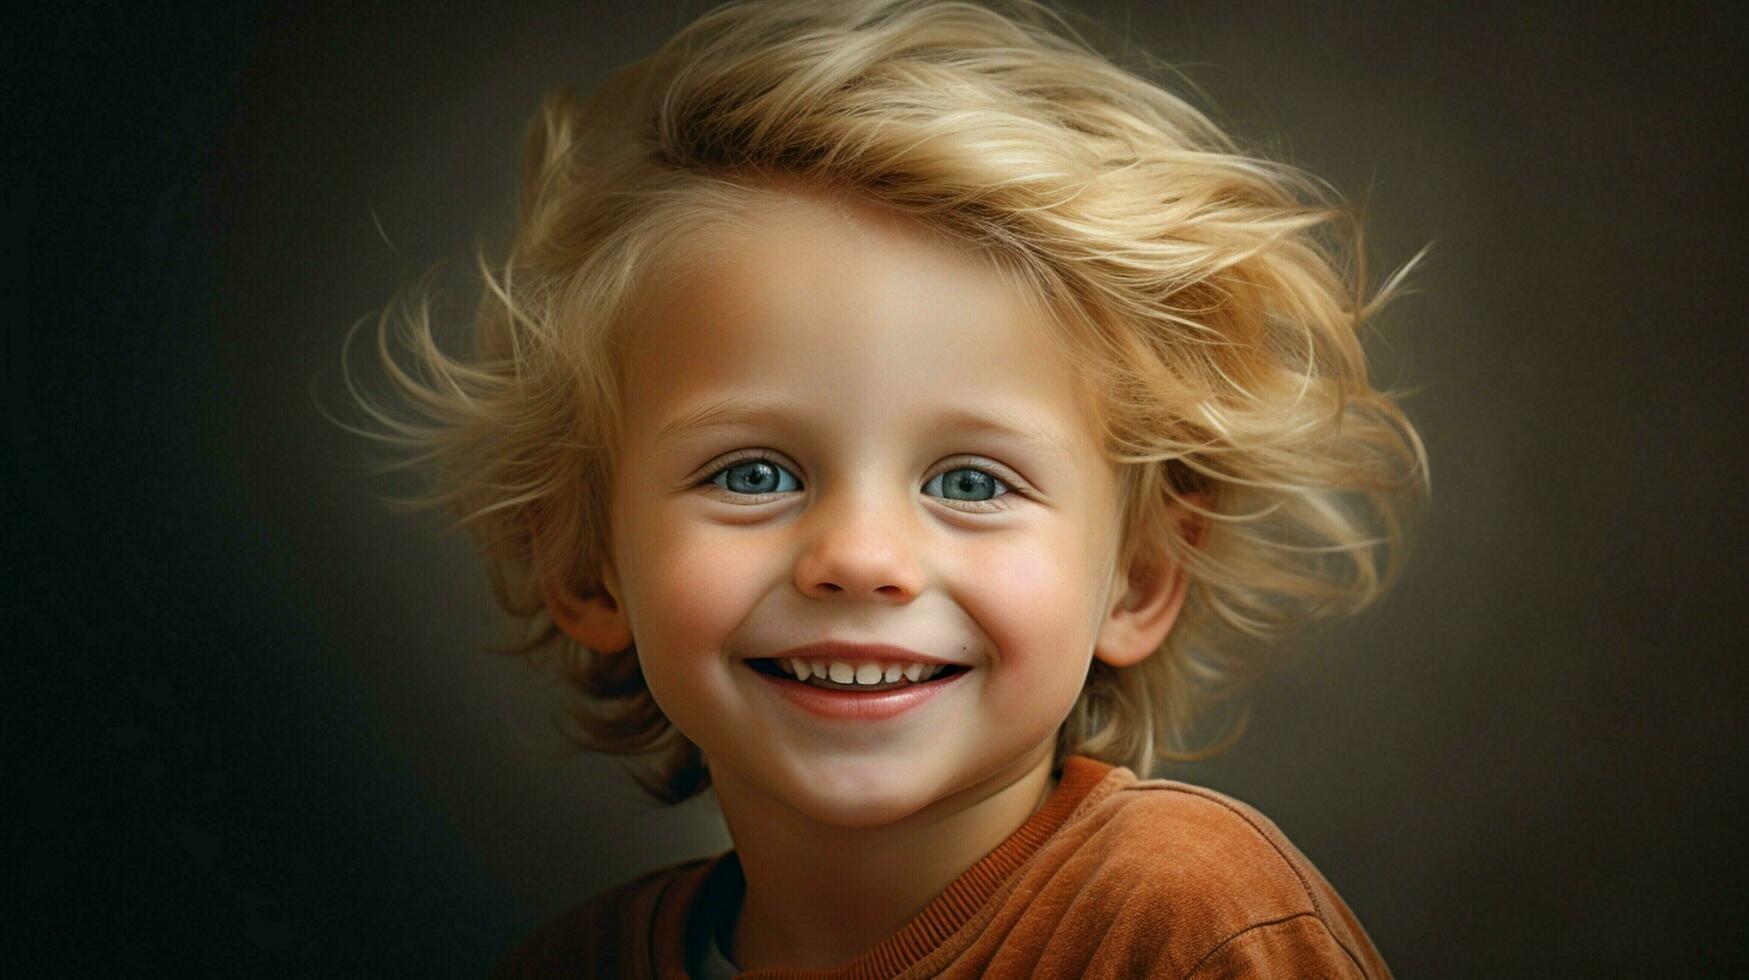 sorridente alegre criança com loiro cabelo irradia felicidade foto